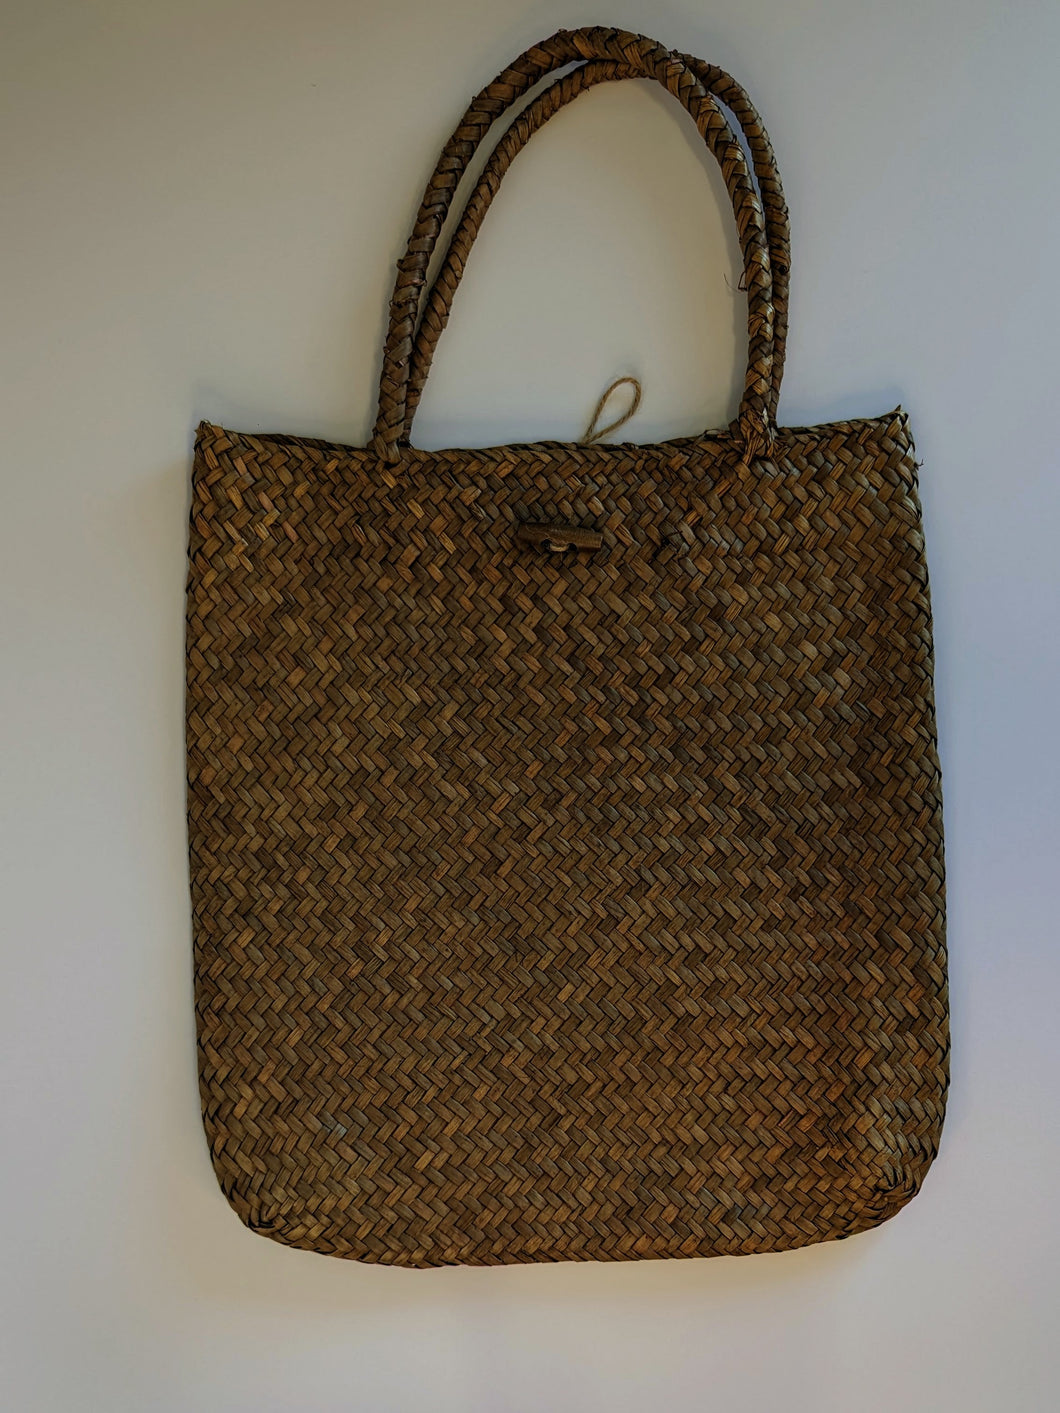 Market Bag - Seagrass Basket Bag